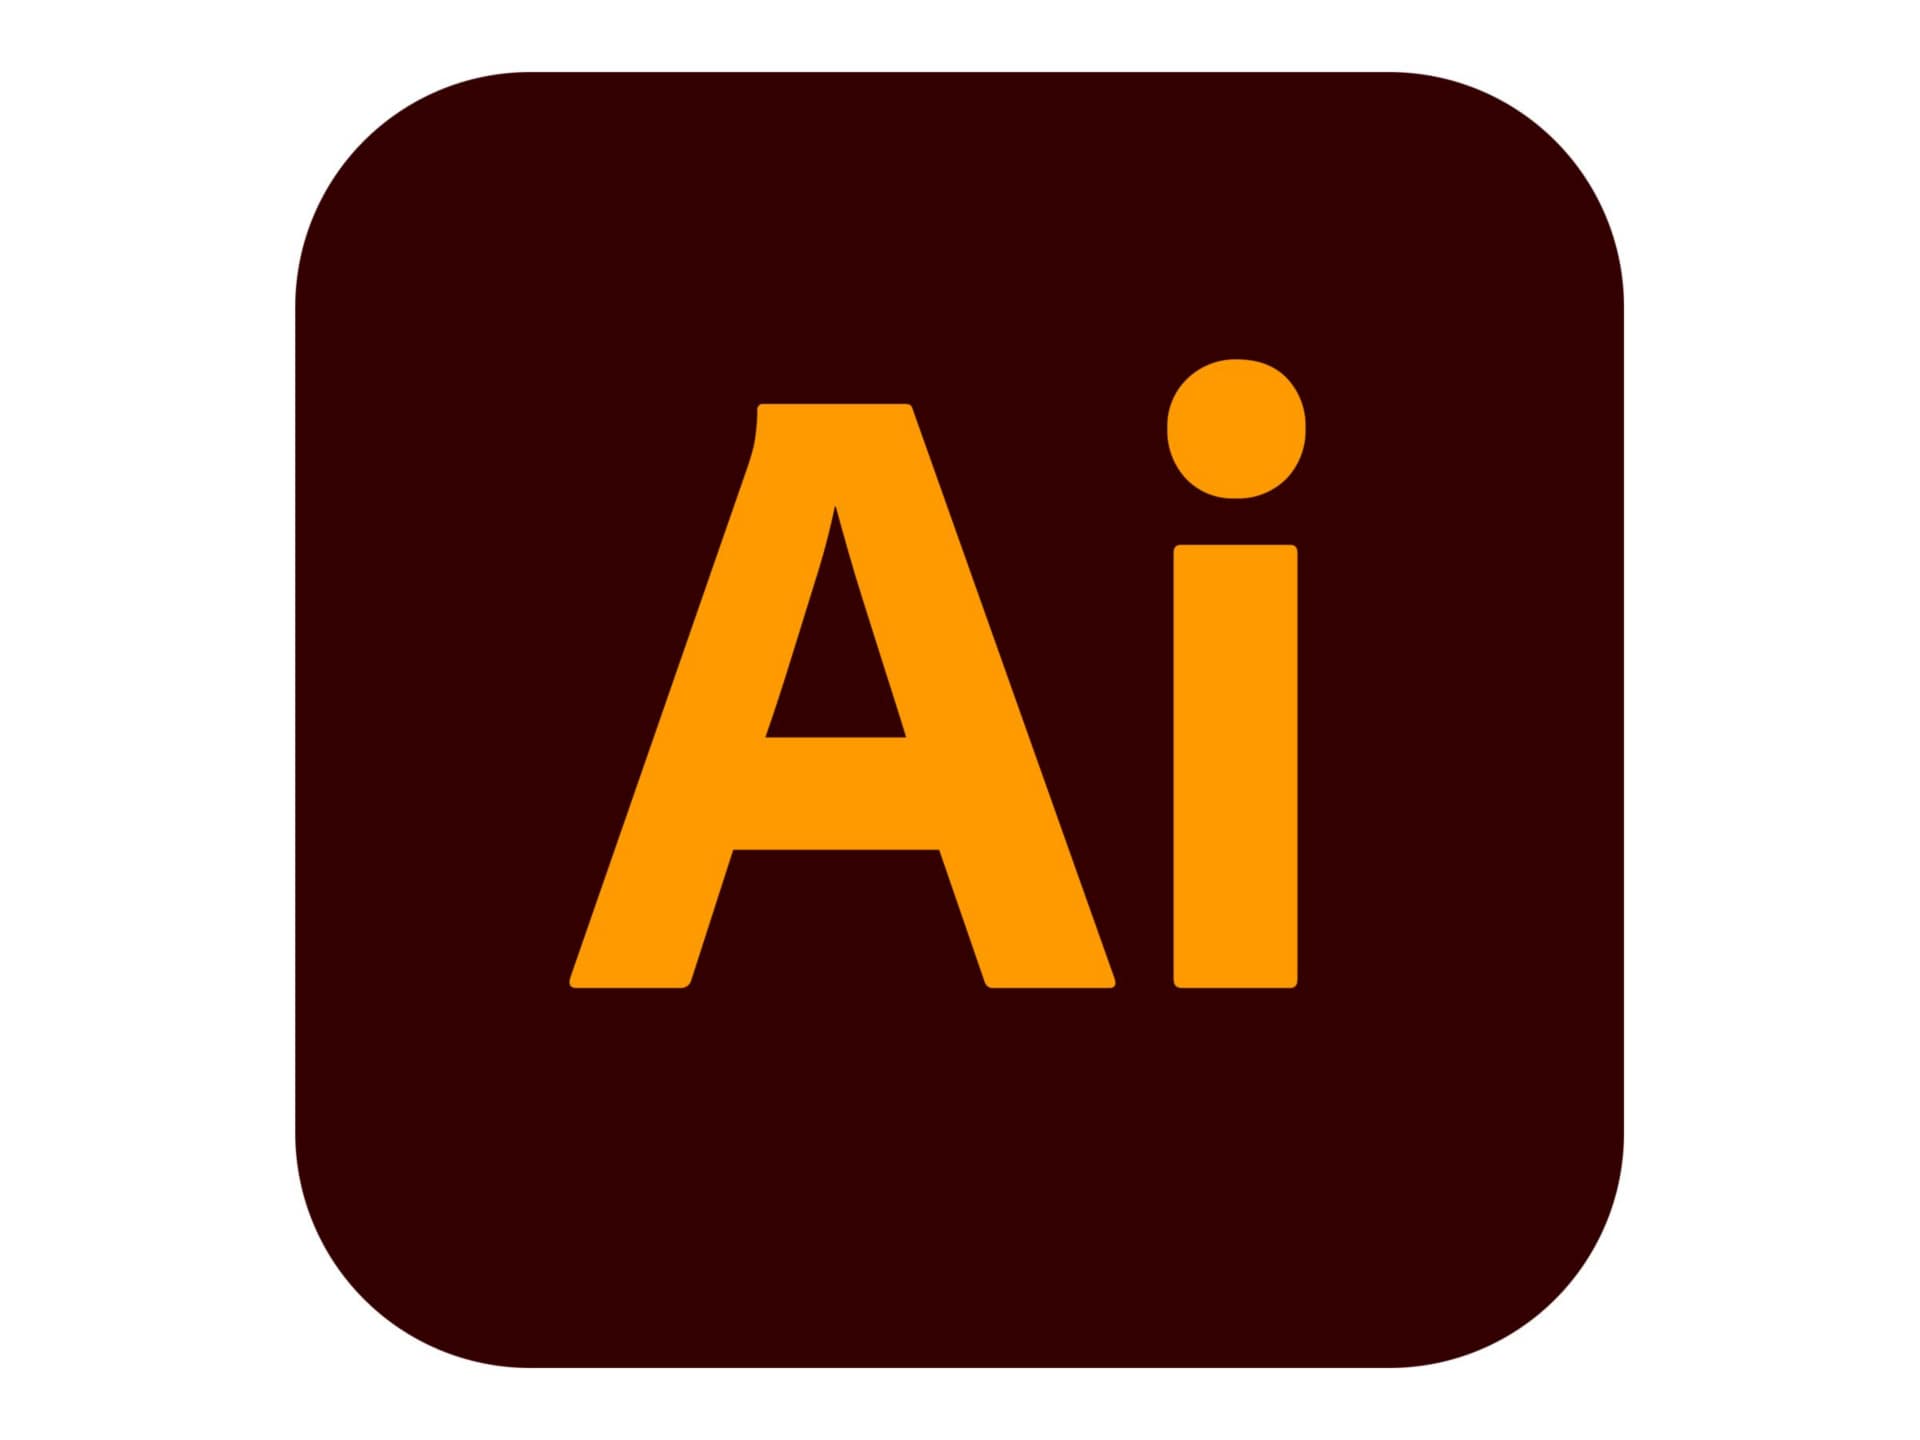 Adobe Illustrator CC for Enterprise - Subscription New (9 months) - 1 named user